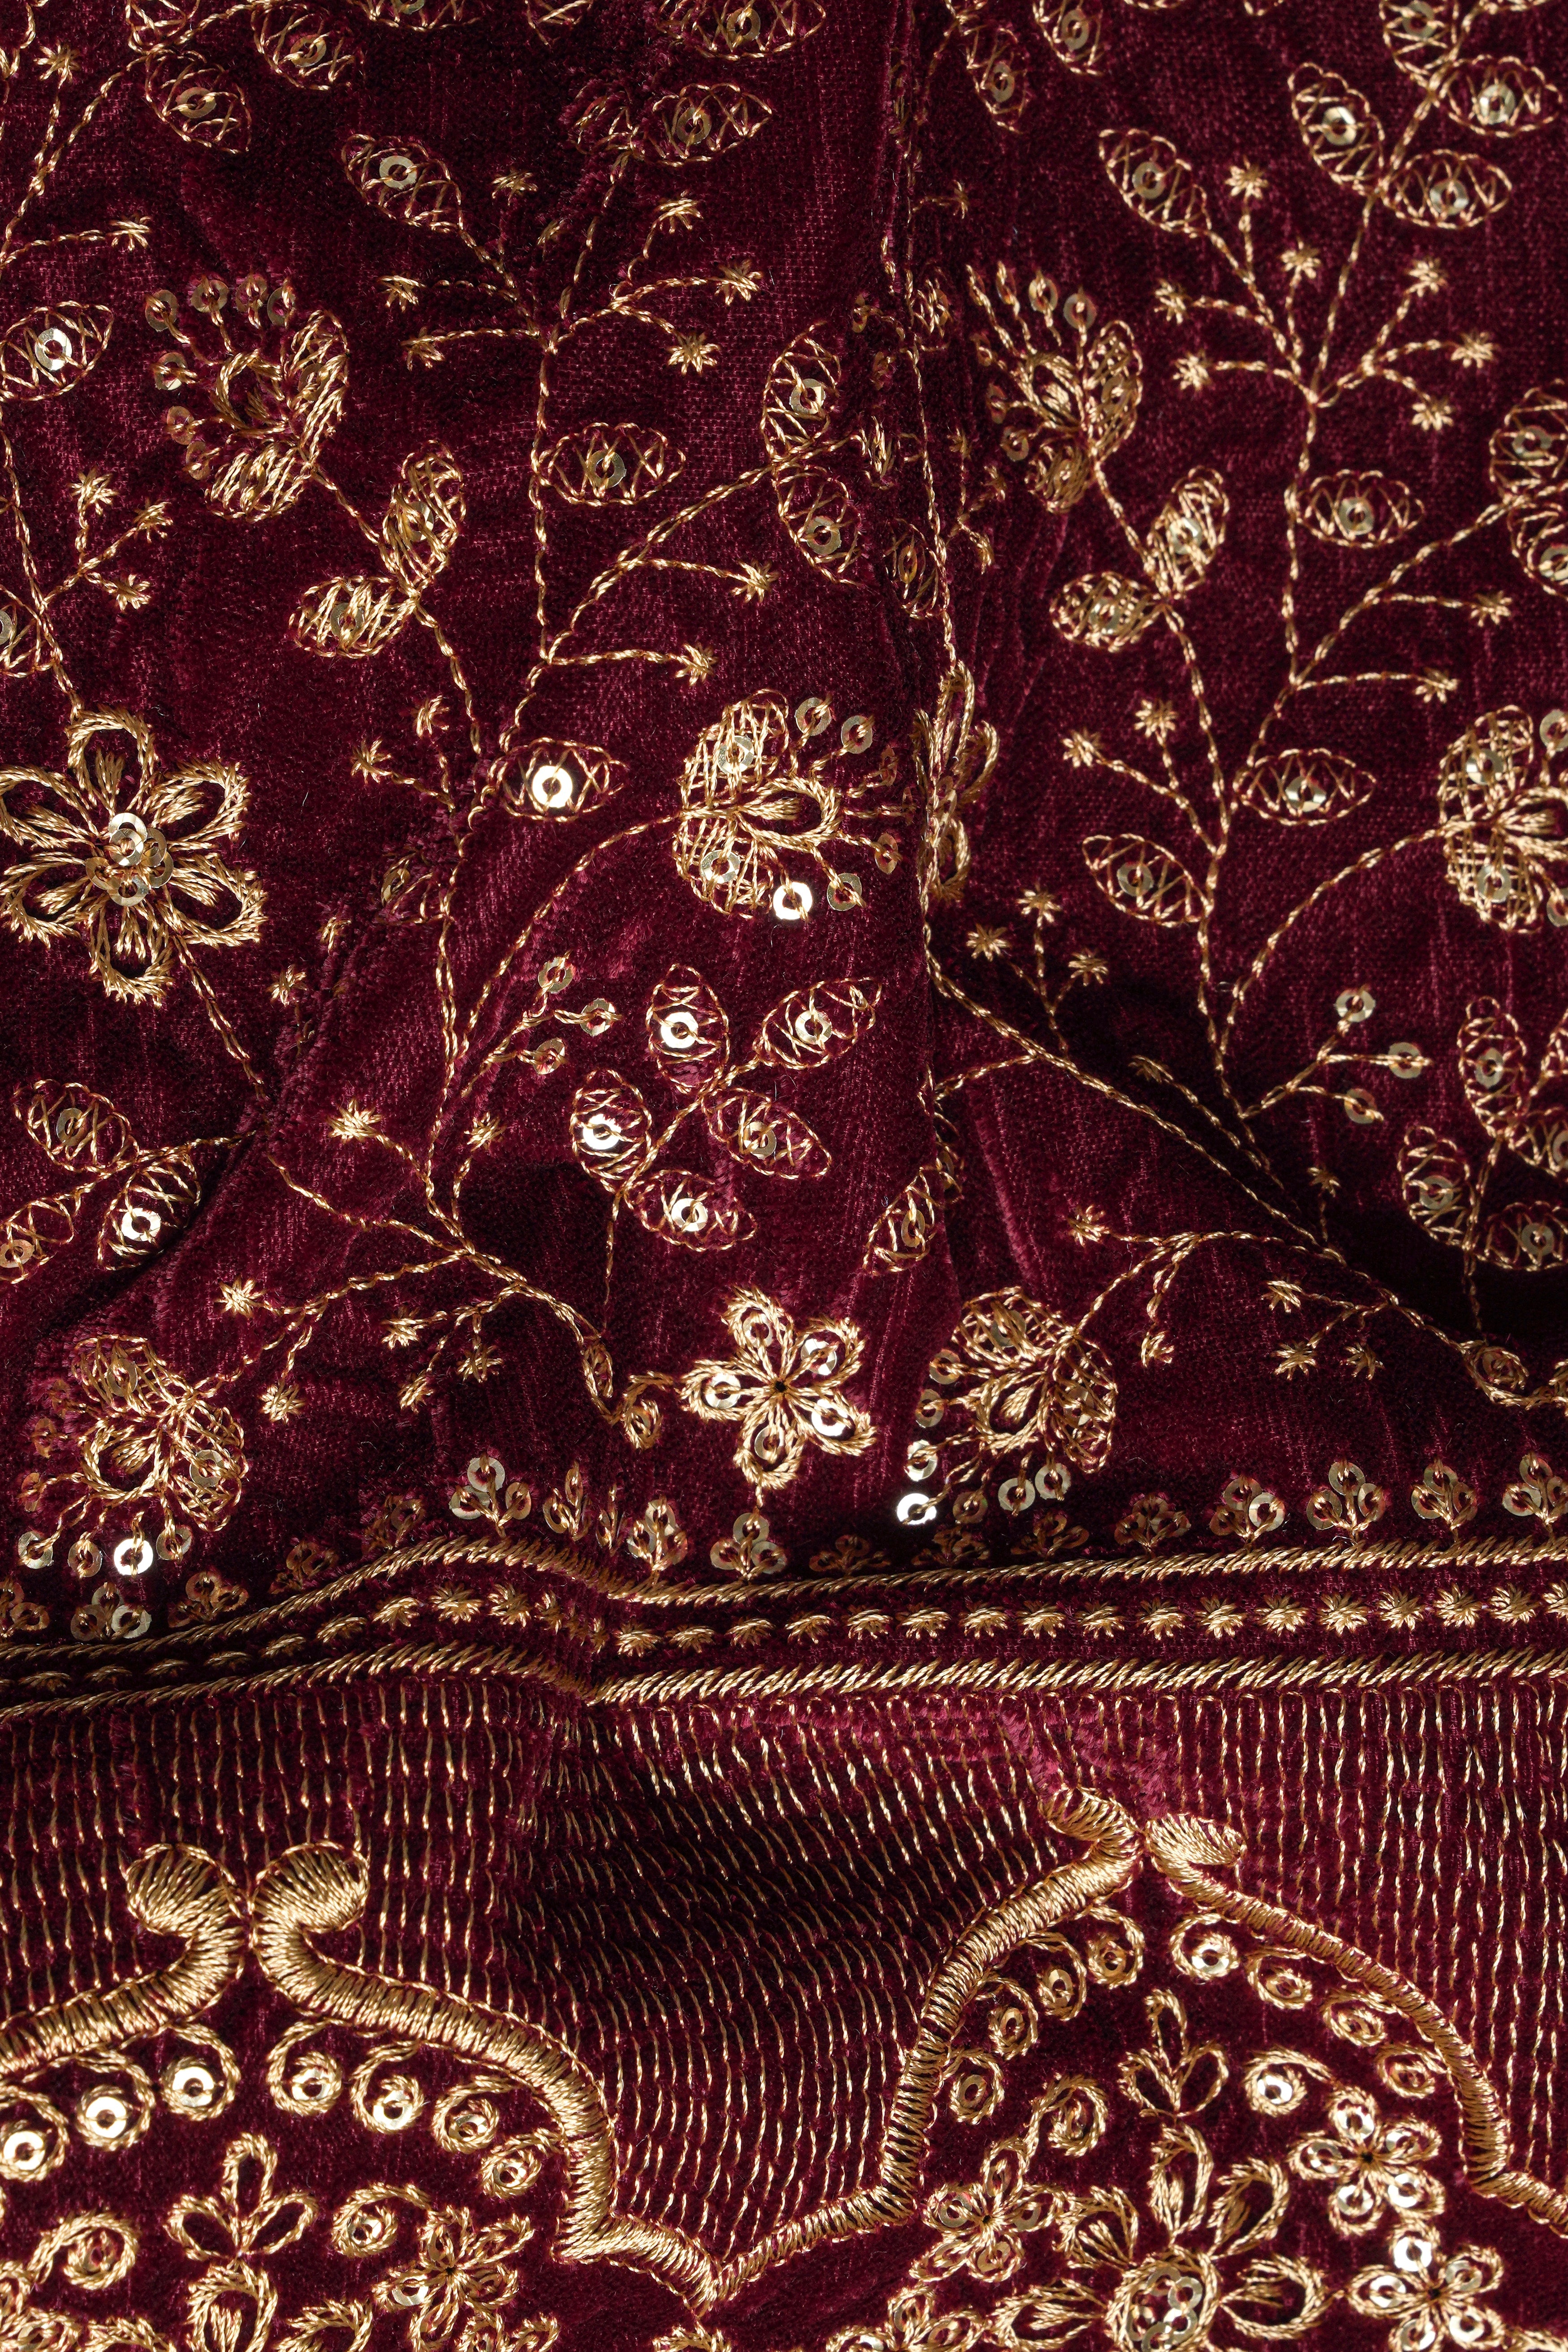 Temptress Maroon Floral Golden Thread Embroidered Jodhpuri Set